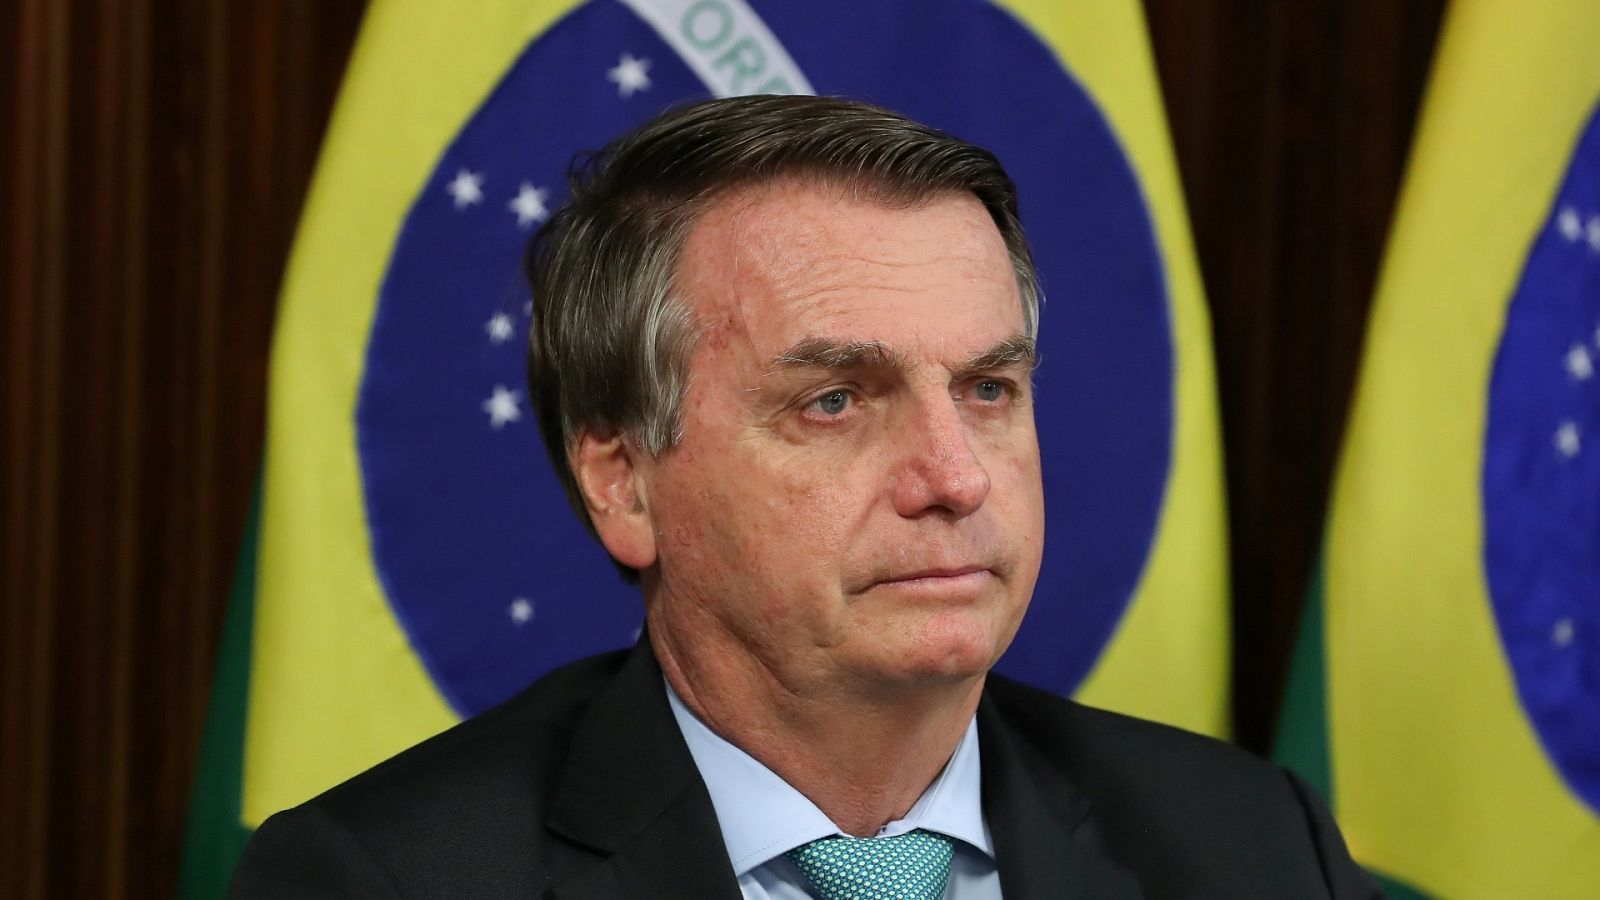 El presidente de Brasil, Jair Bolsonaro, asiste a una cumbre climática global virtual a través de un enlace de video en Brasilia